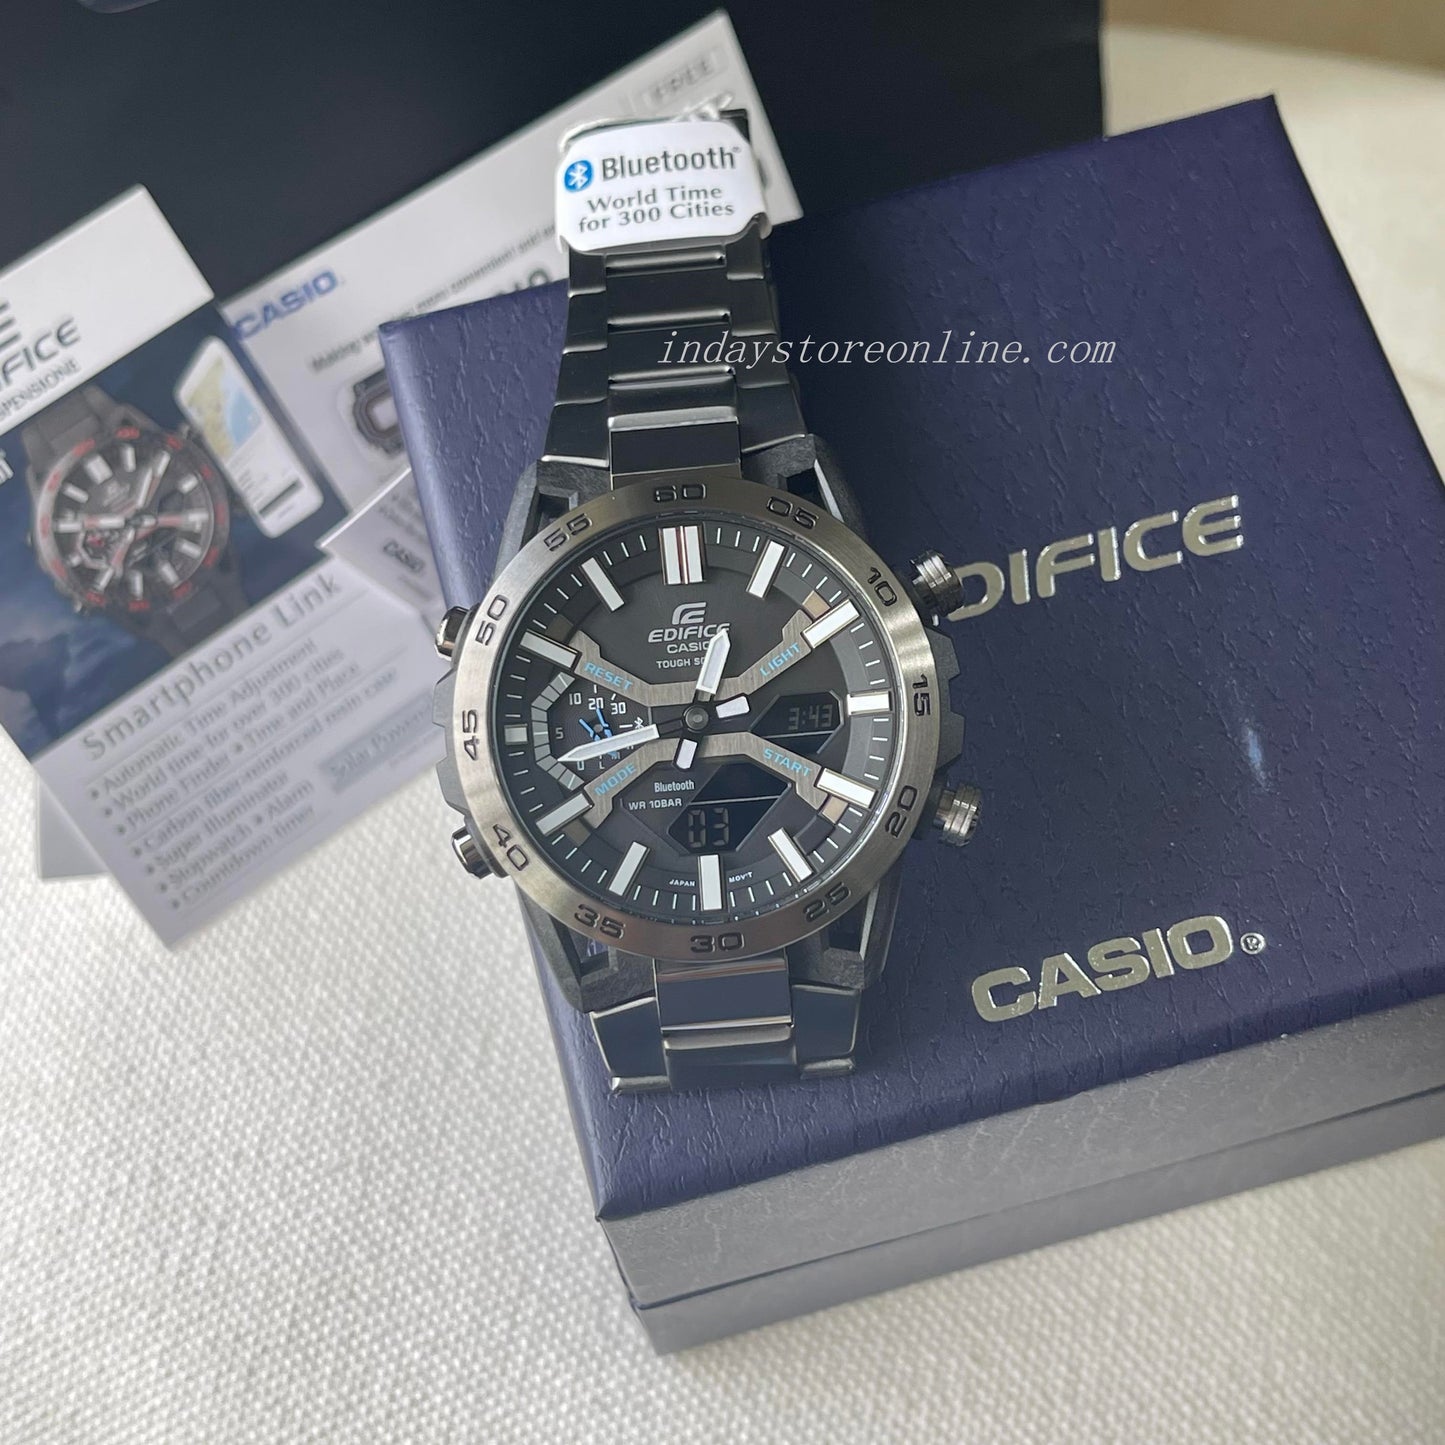 Casio Edifice Men's Watch ECB-2000DC-1A